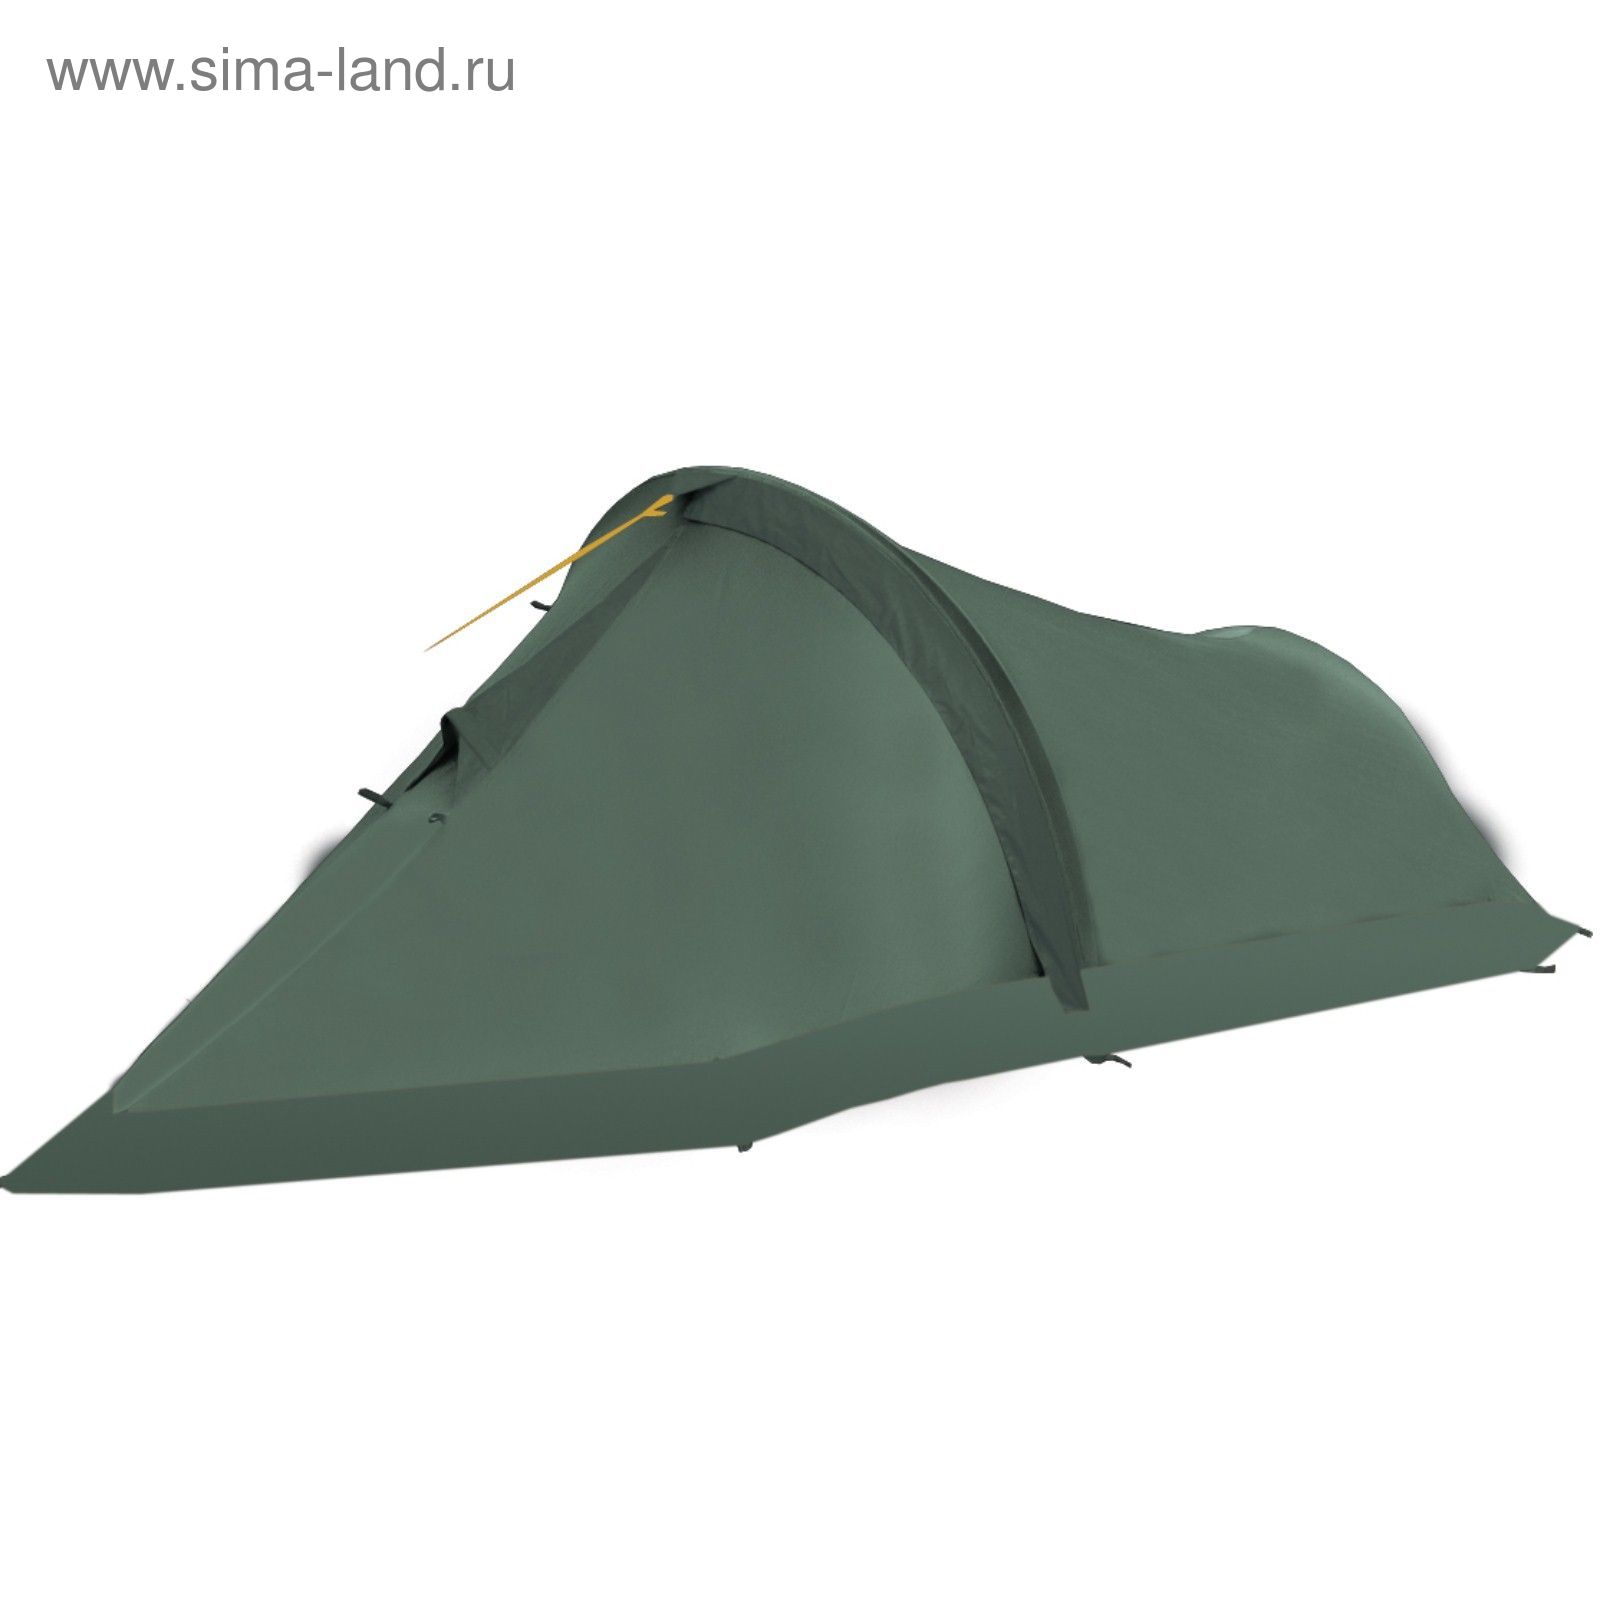 Палатка, серия "Экстрим" Crank 2, зеленая, двухместная